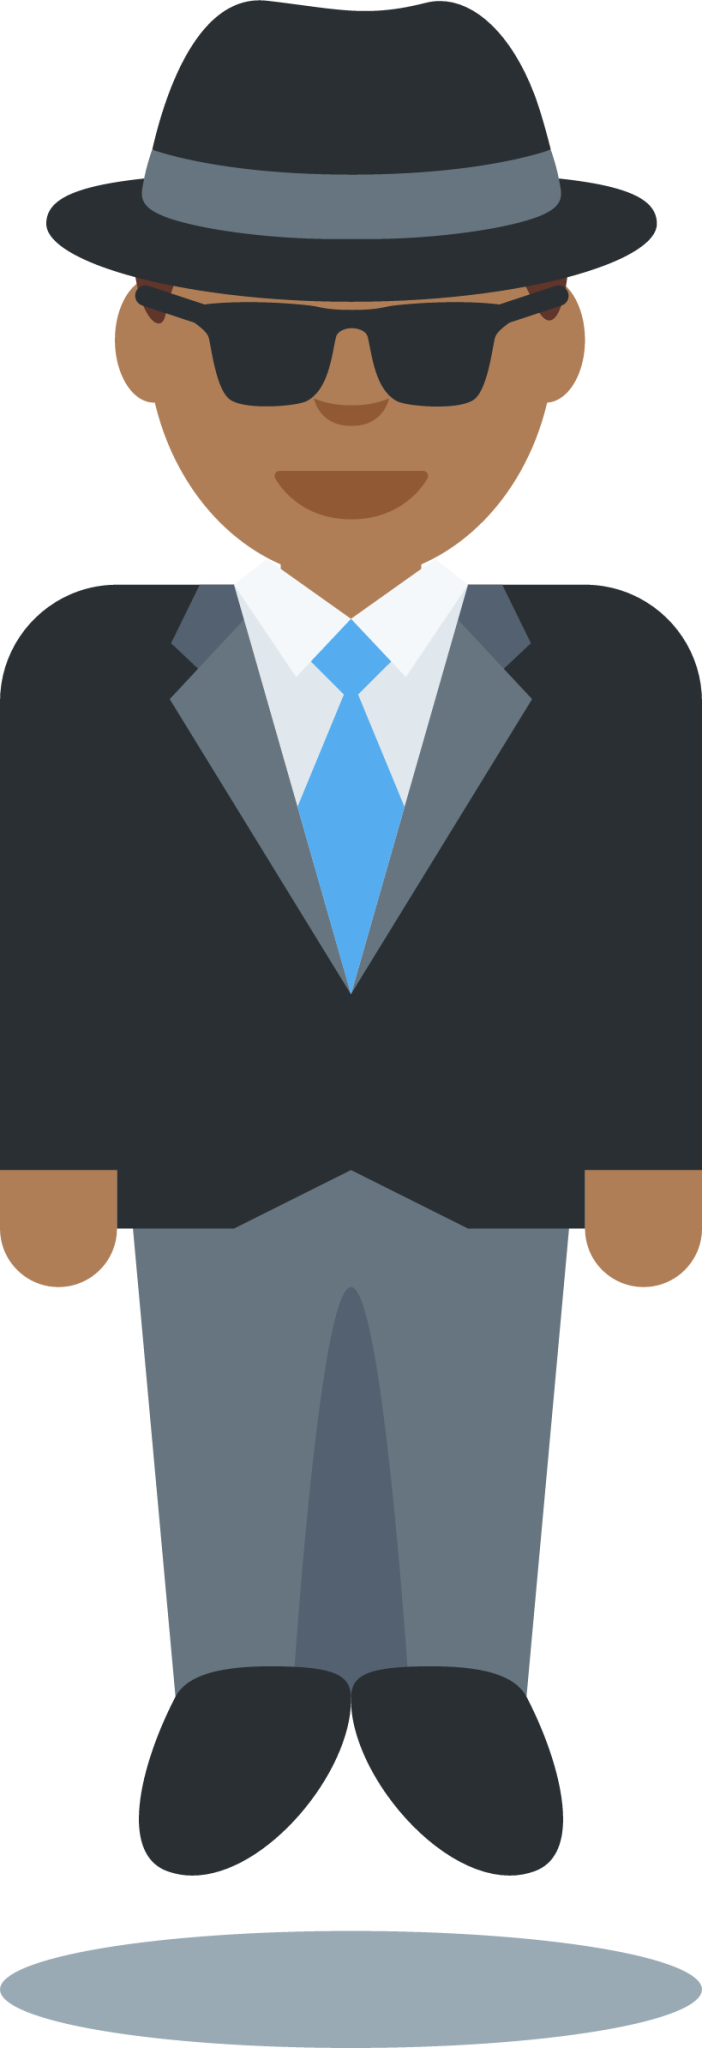 levitating man: medium-dark skin tone emoji